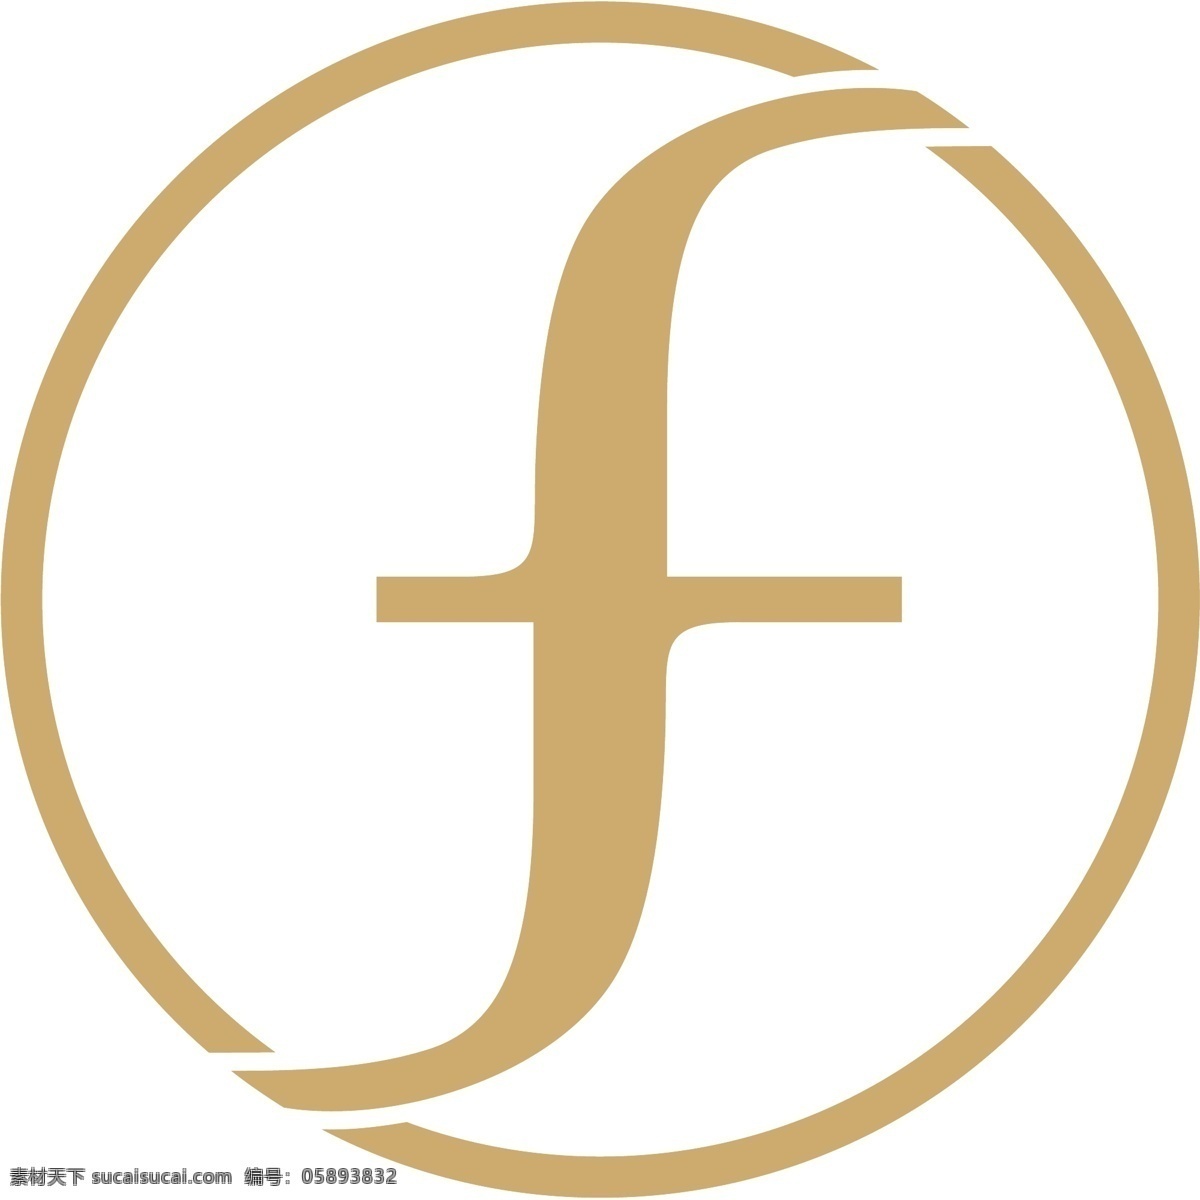 互联网 字母 造型 服装 logo 科技 标志 创意 广告 珠宝 科技logo 领域 多用途 标识 公司 简约 企业标识 企业logo 能源